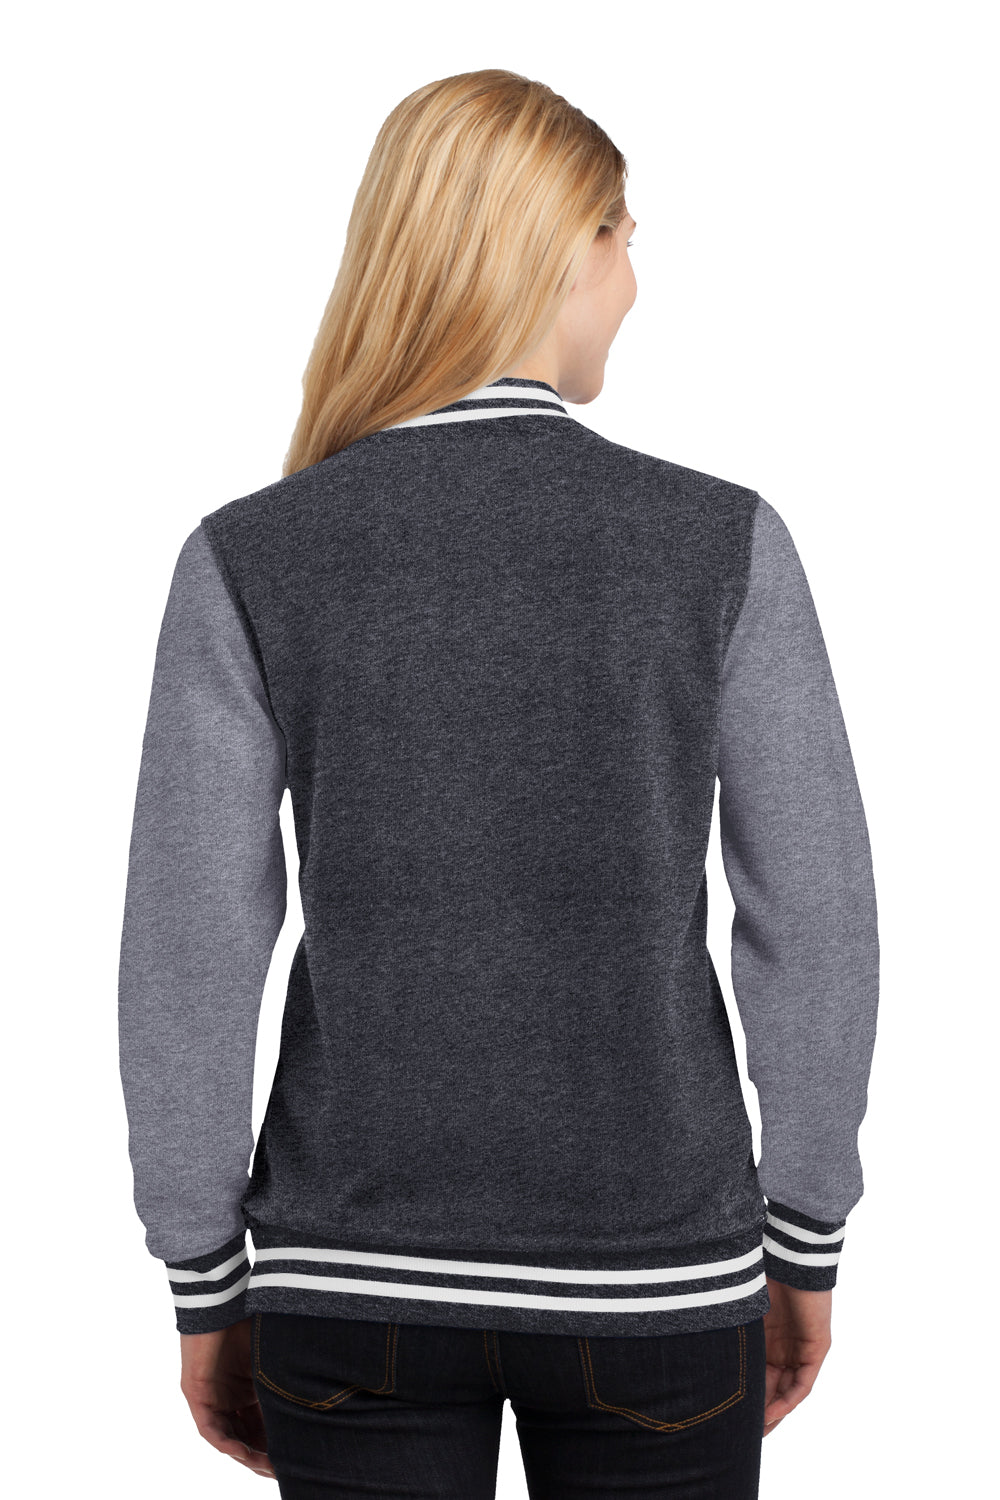 Sport-Tek LST270 Womens Snap Down Fleece Letterman Jacket Graphite Grey Back